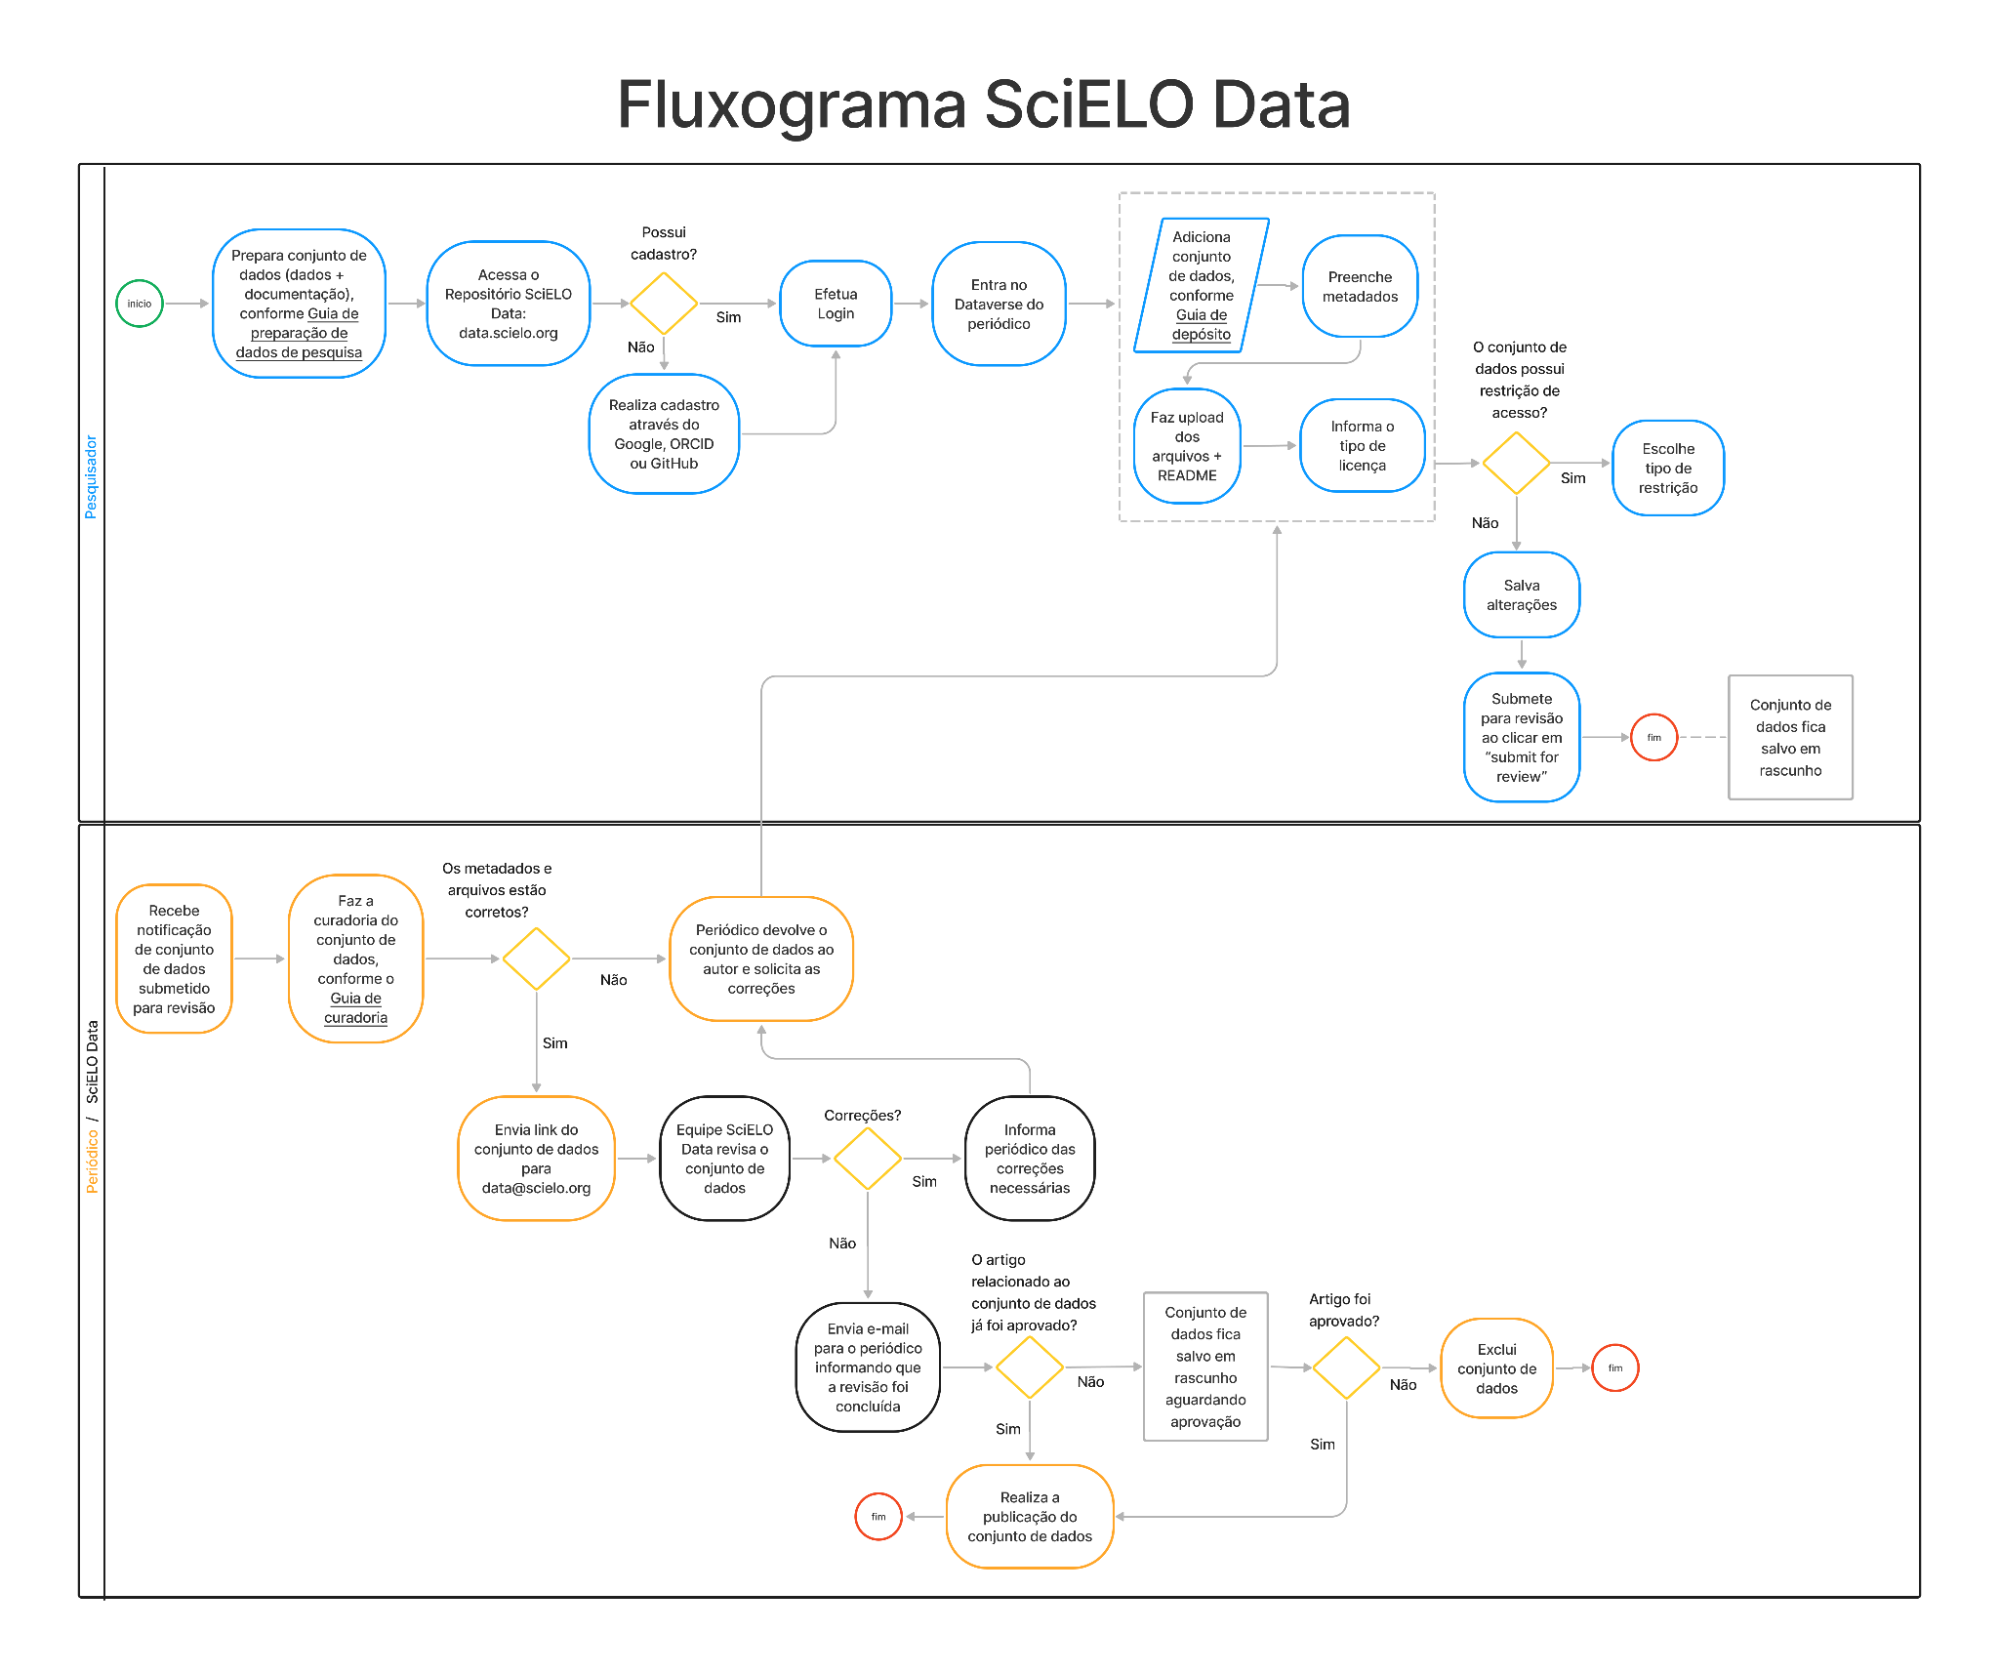 Fluxograma do SciELO Data